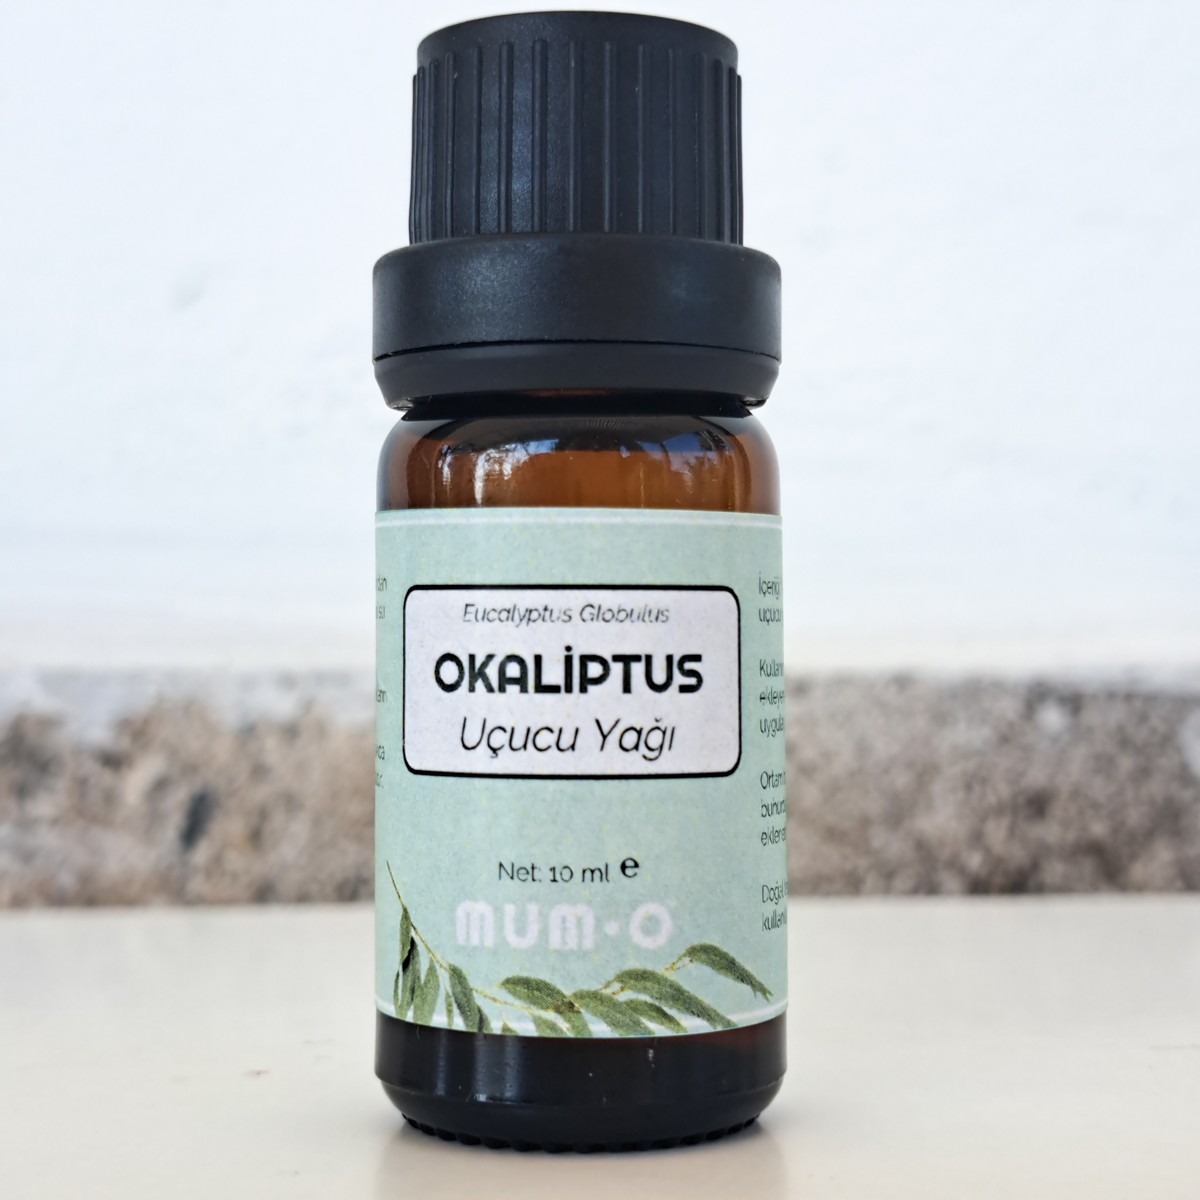 Okaliptus Uçucu Yağı (10 ml)